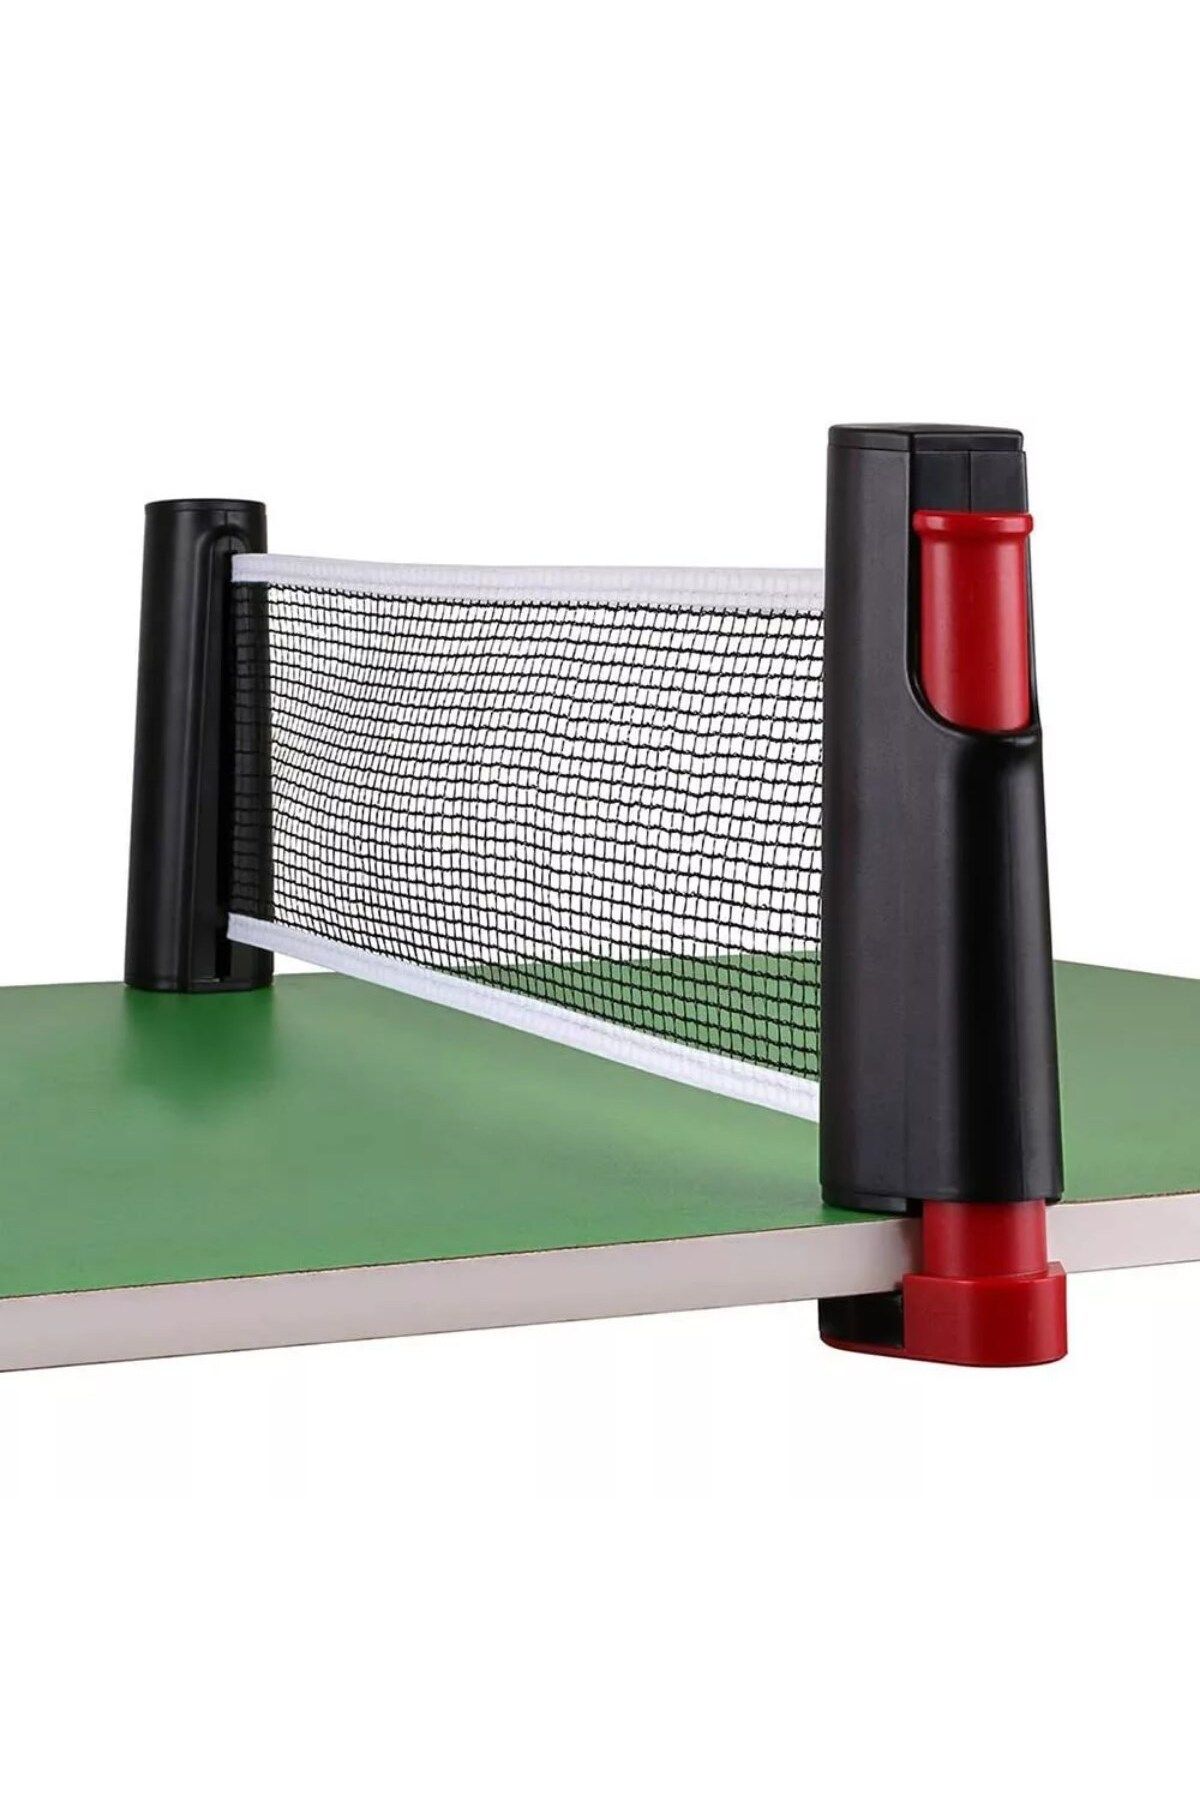 MELFSHOP Teleskopik Taşınabilir Kaymaz Ping Pong Masa Tenisi Filesi Aparatı